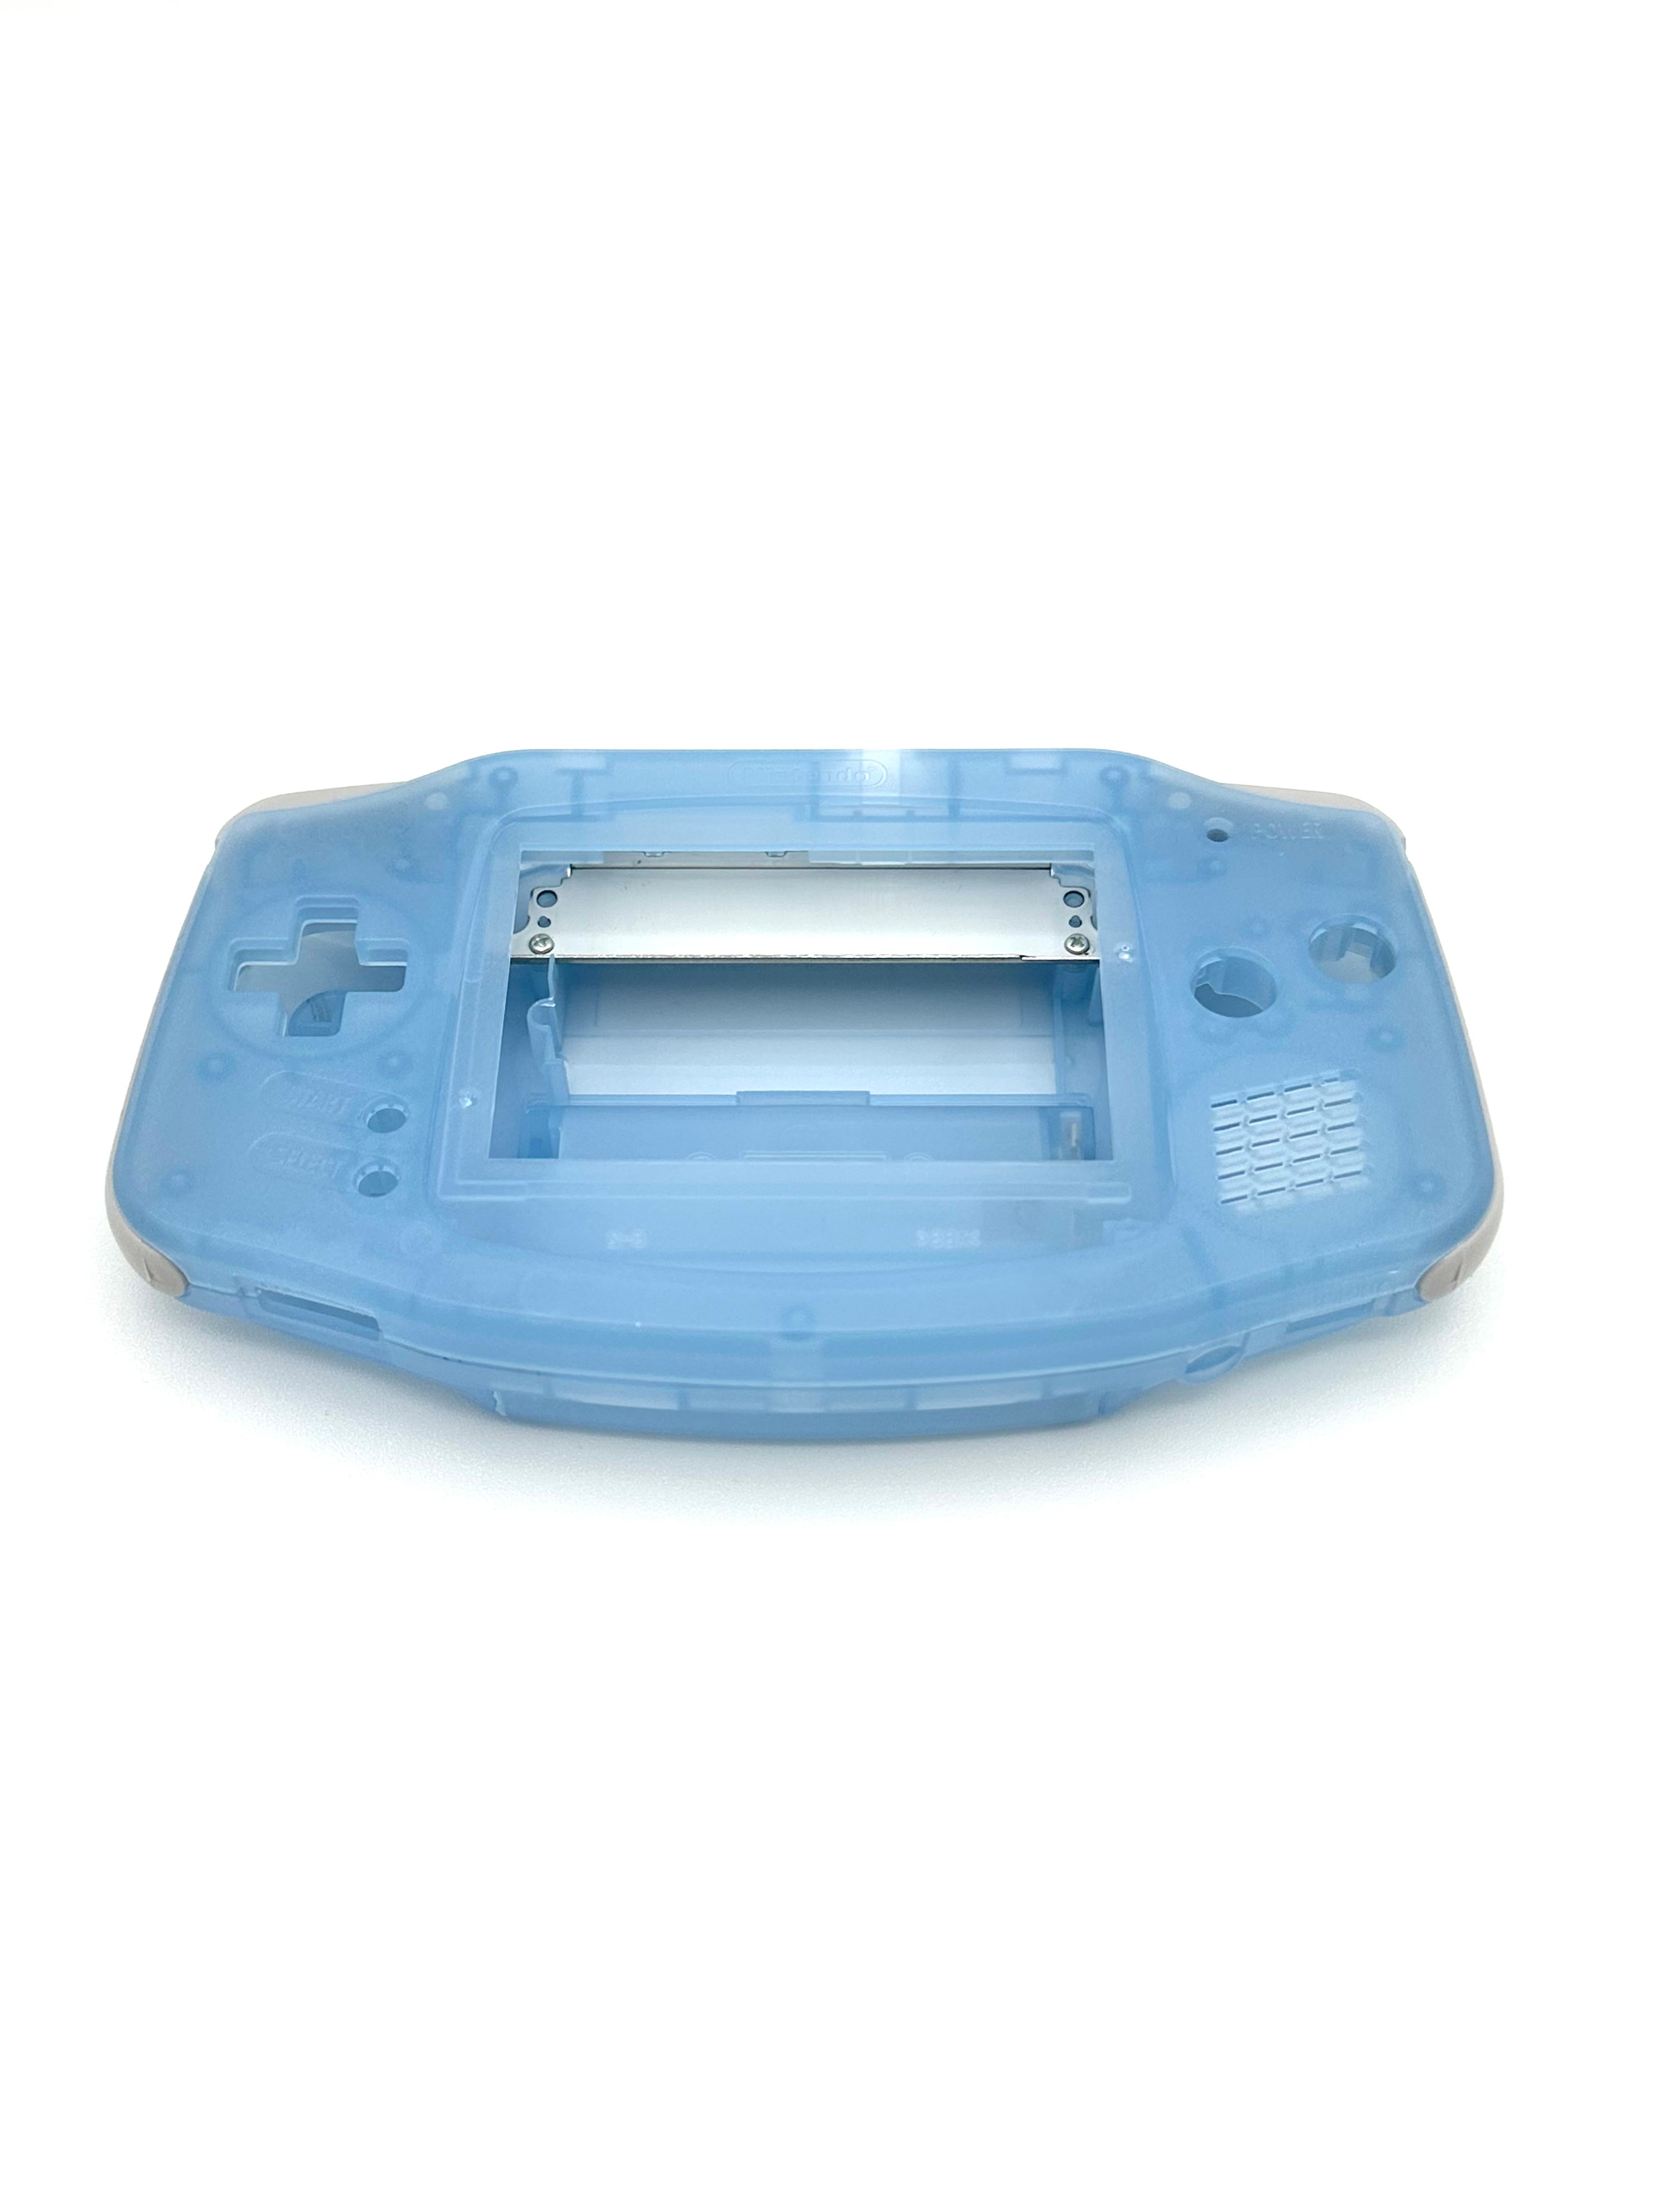 Nintendo Gameboy Advance Shell Housing Clear Light Blue